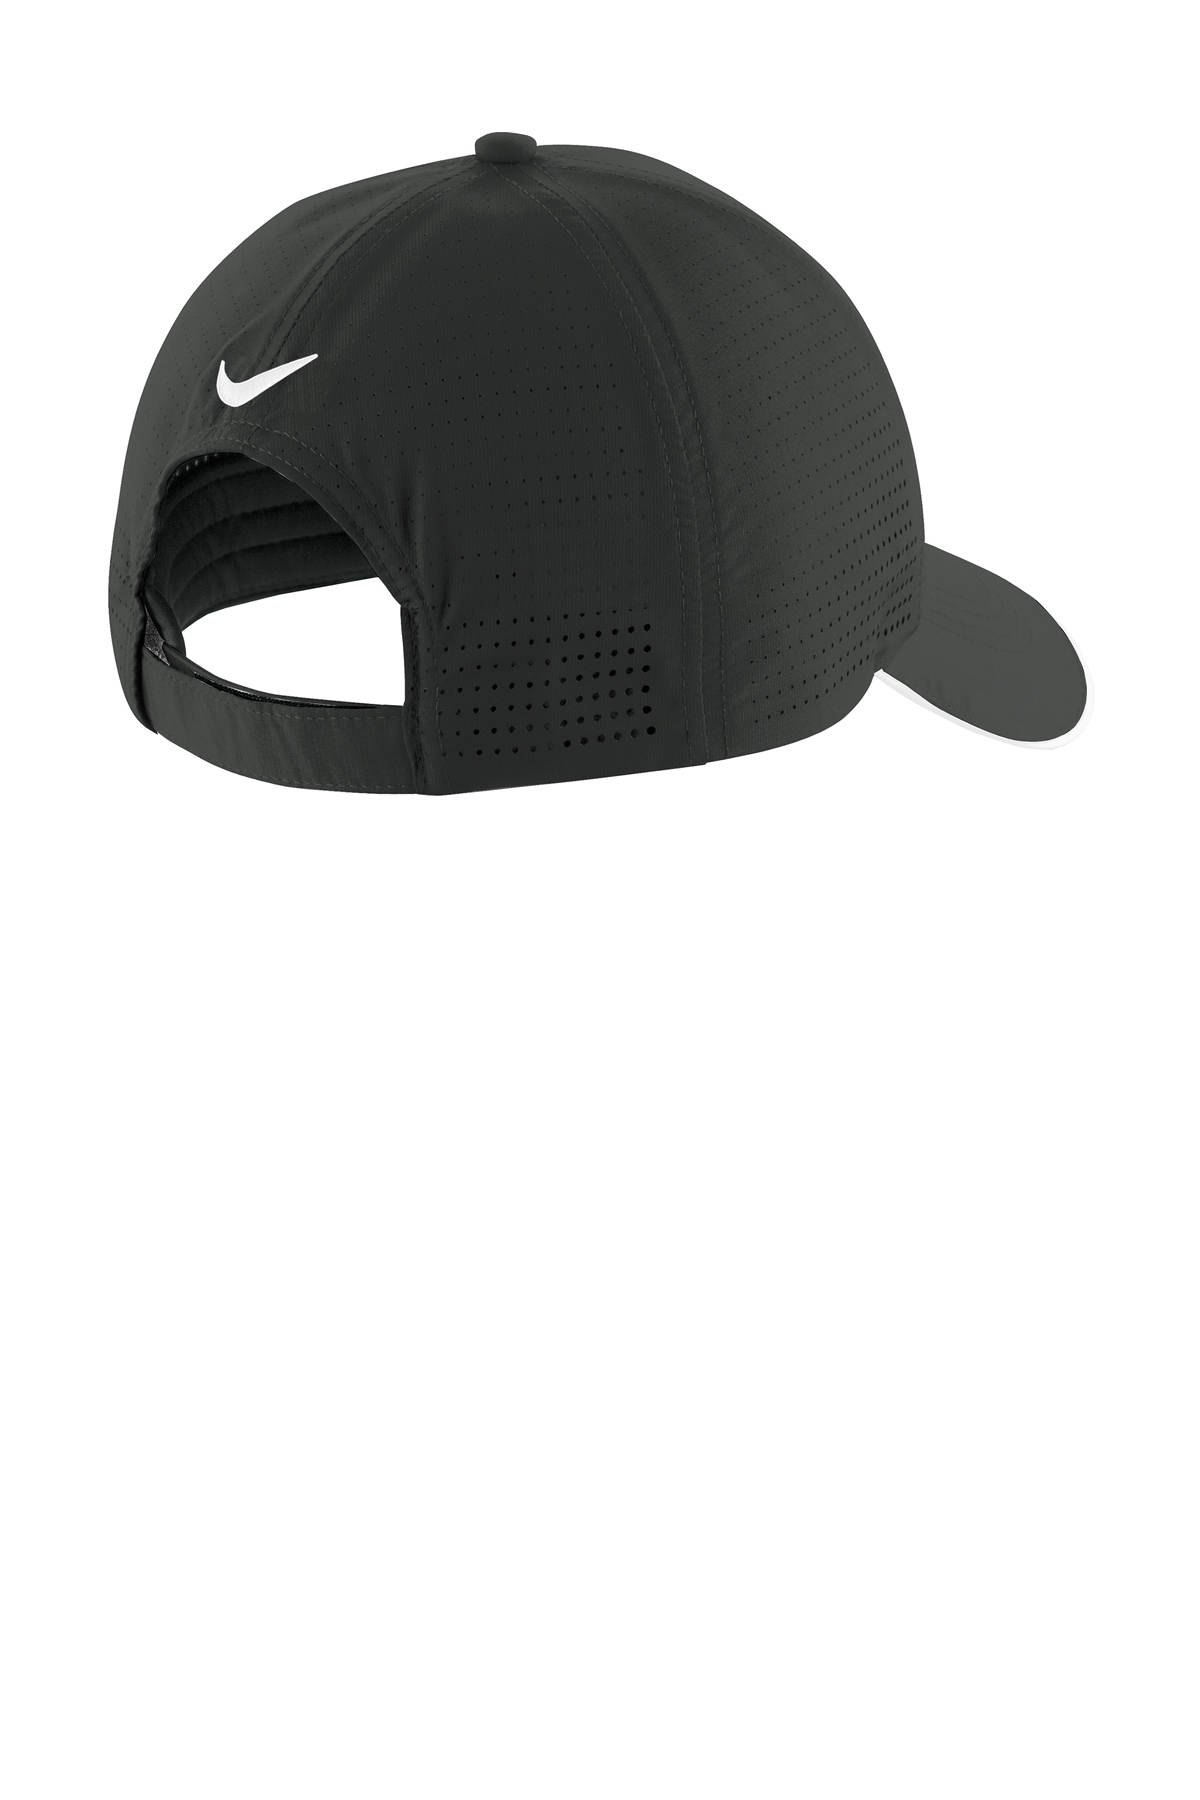 Nike Dri-FIT Perforated Performance Cap | Product | SanMar